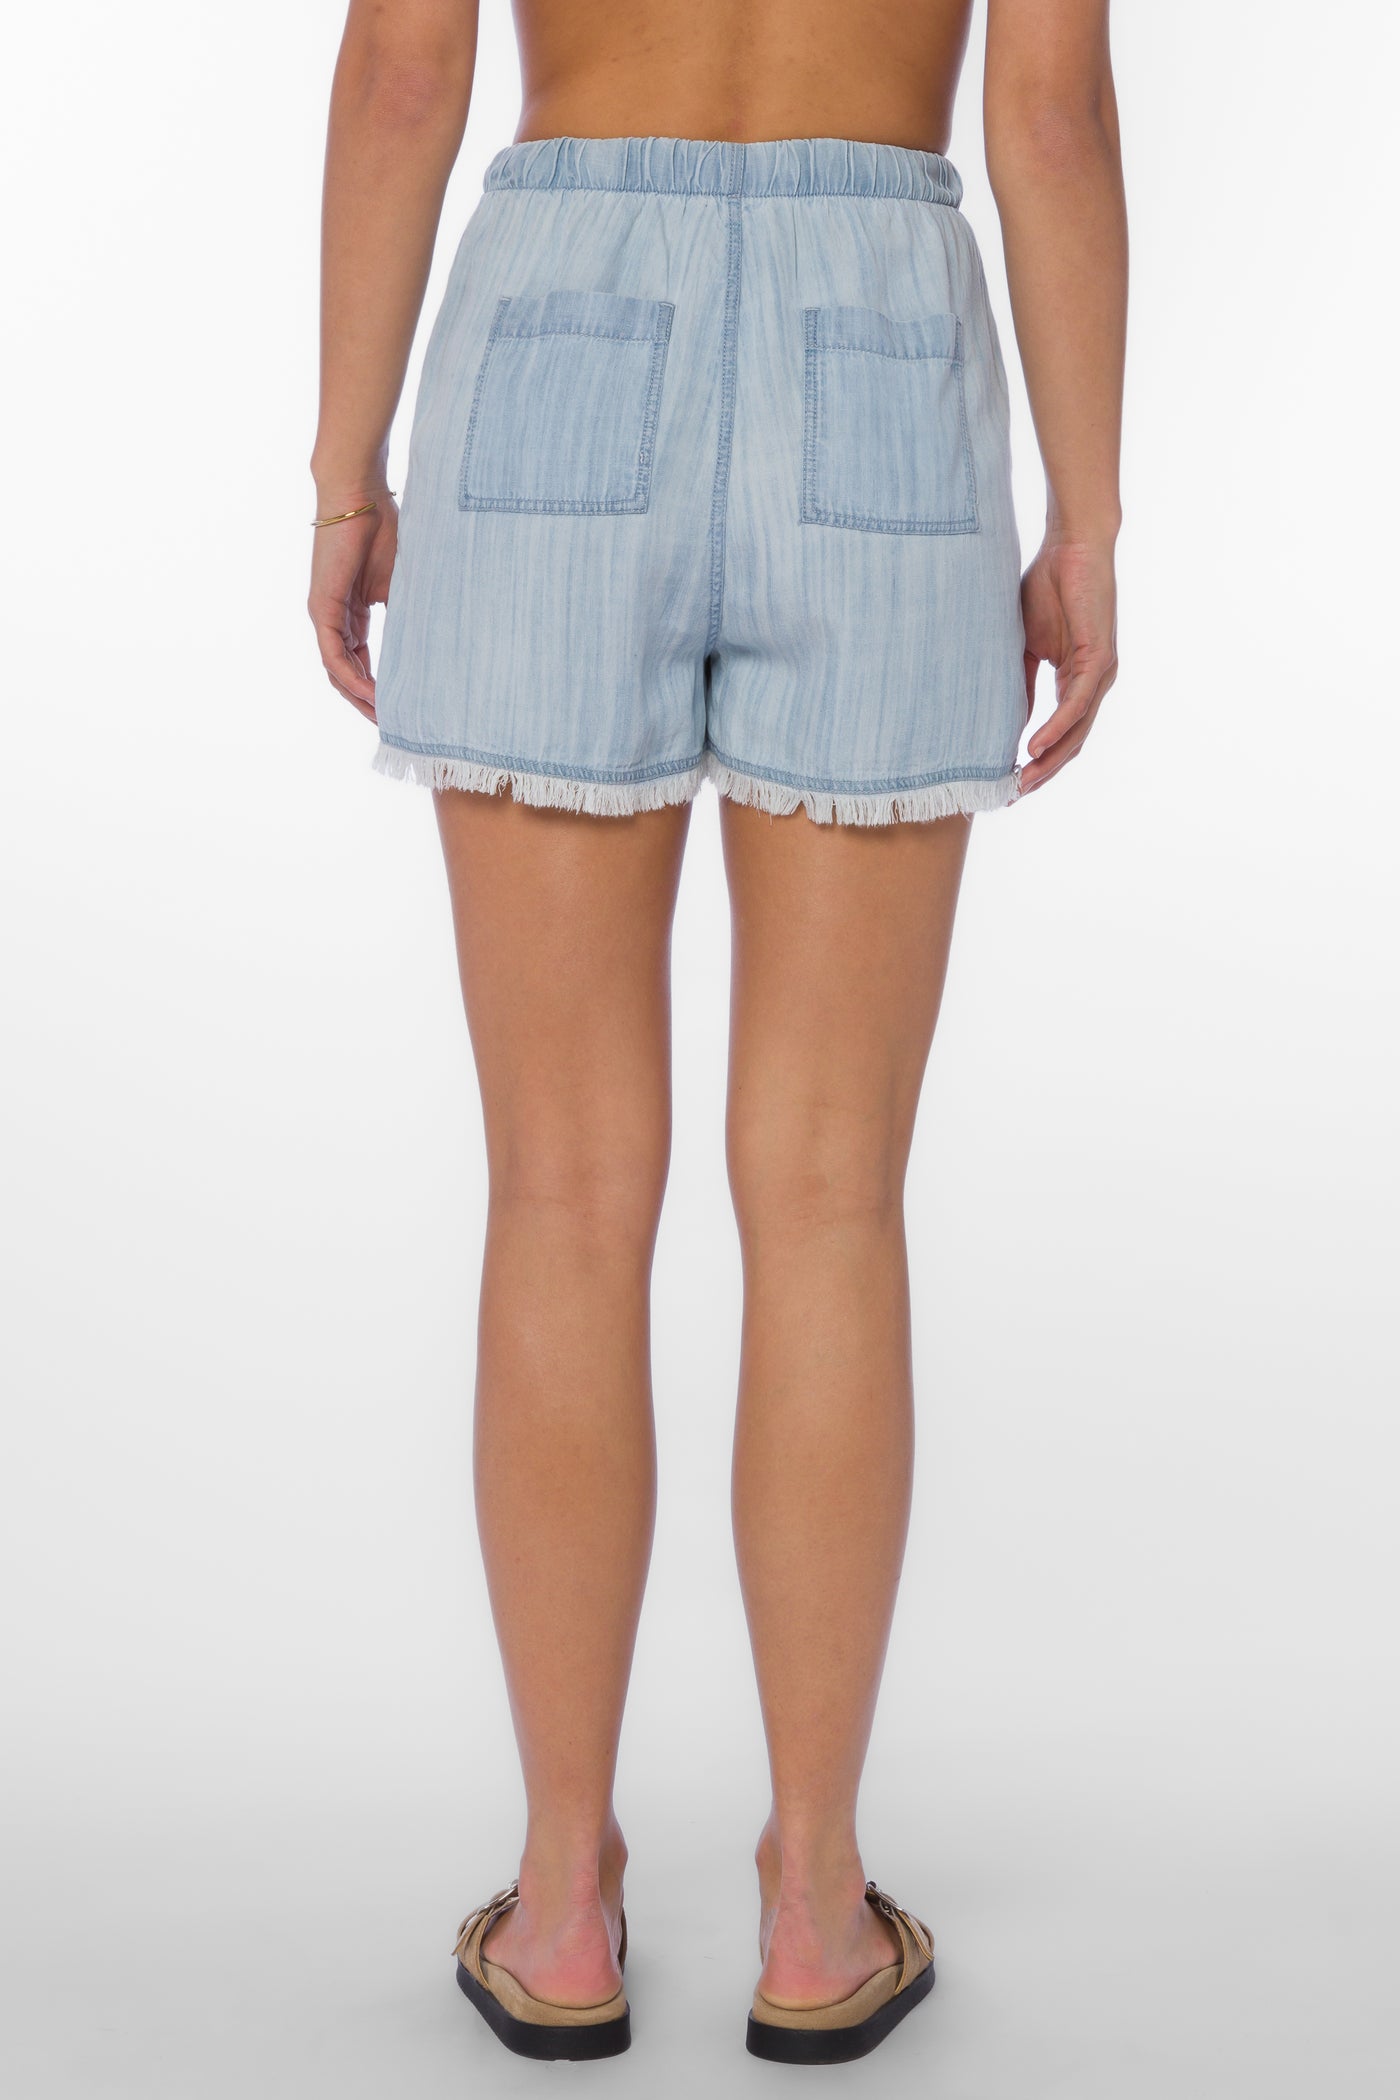 Simone Light Blue Shorts - Bottoms - Velvet Heart Clothing